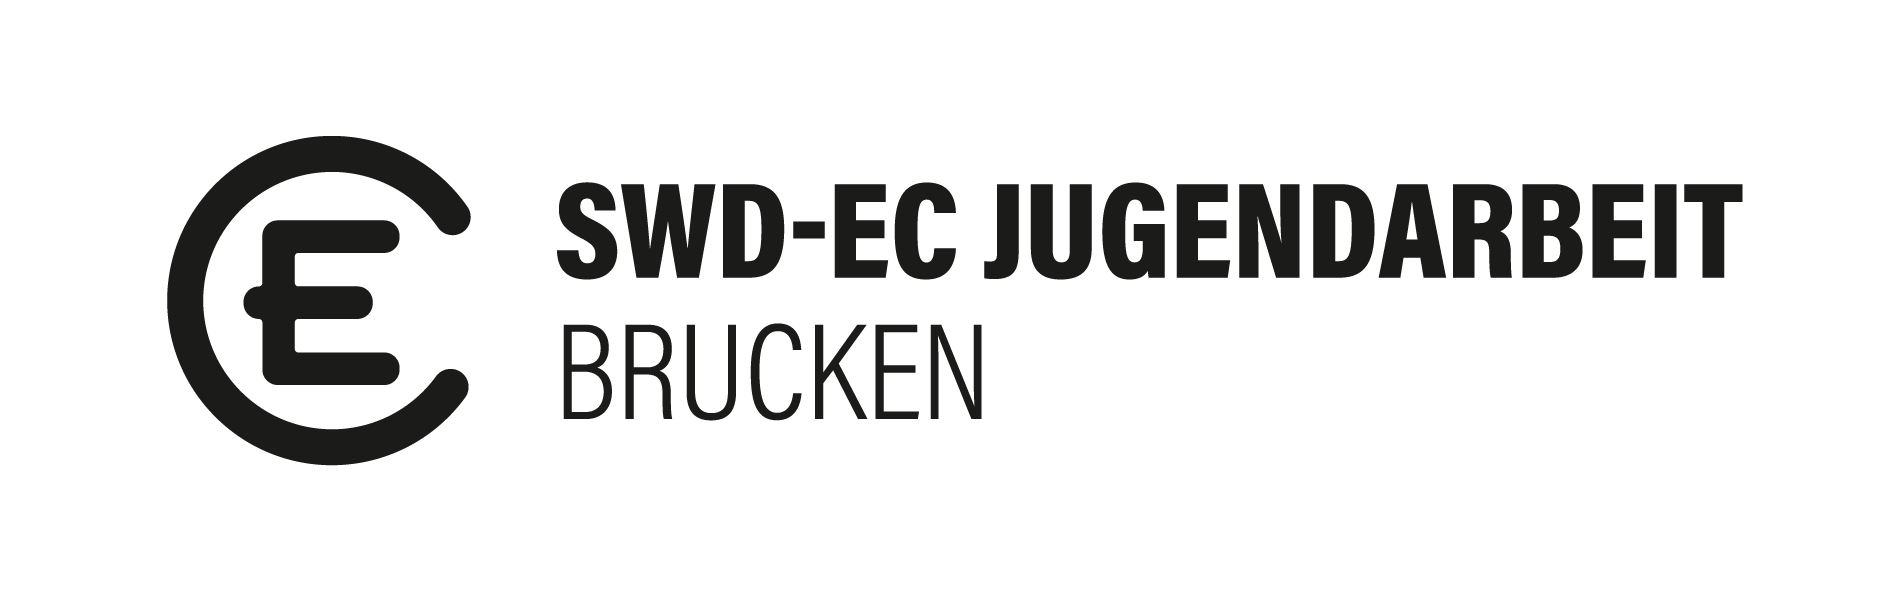 EC Brucken